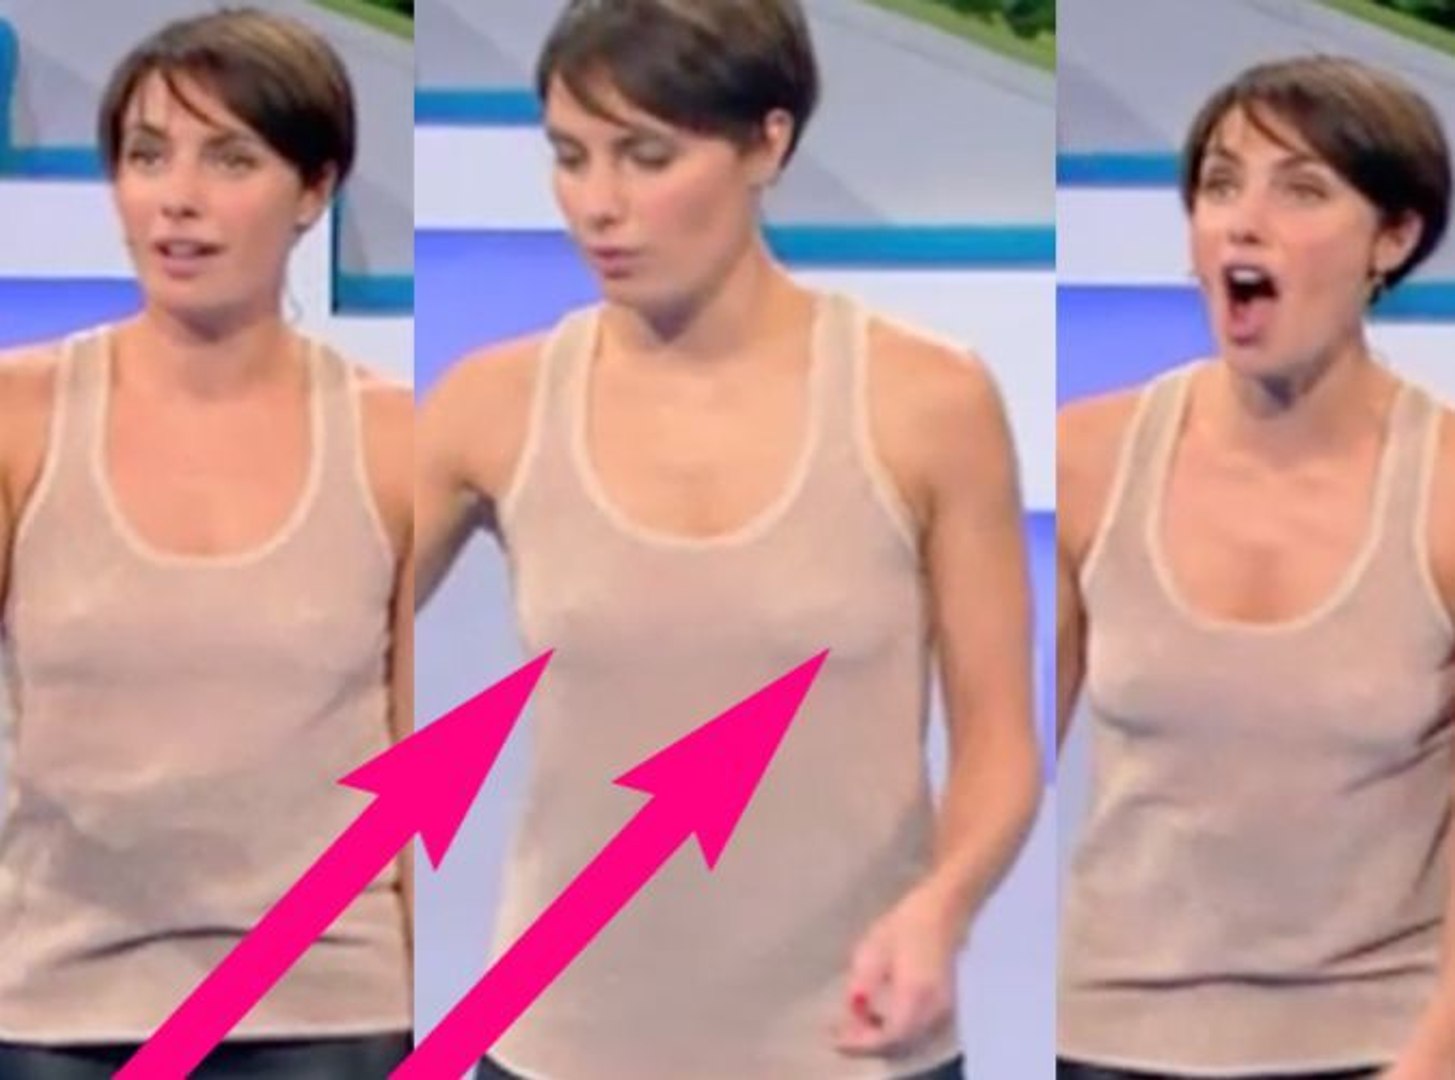 Public Zap : Alessandra Sublet sans soutif, nous dévoile sa poitrine ! Stop  ou encore ? - Vidéo Dailymotion